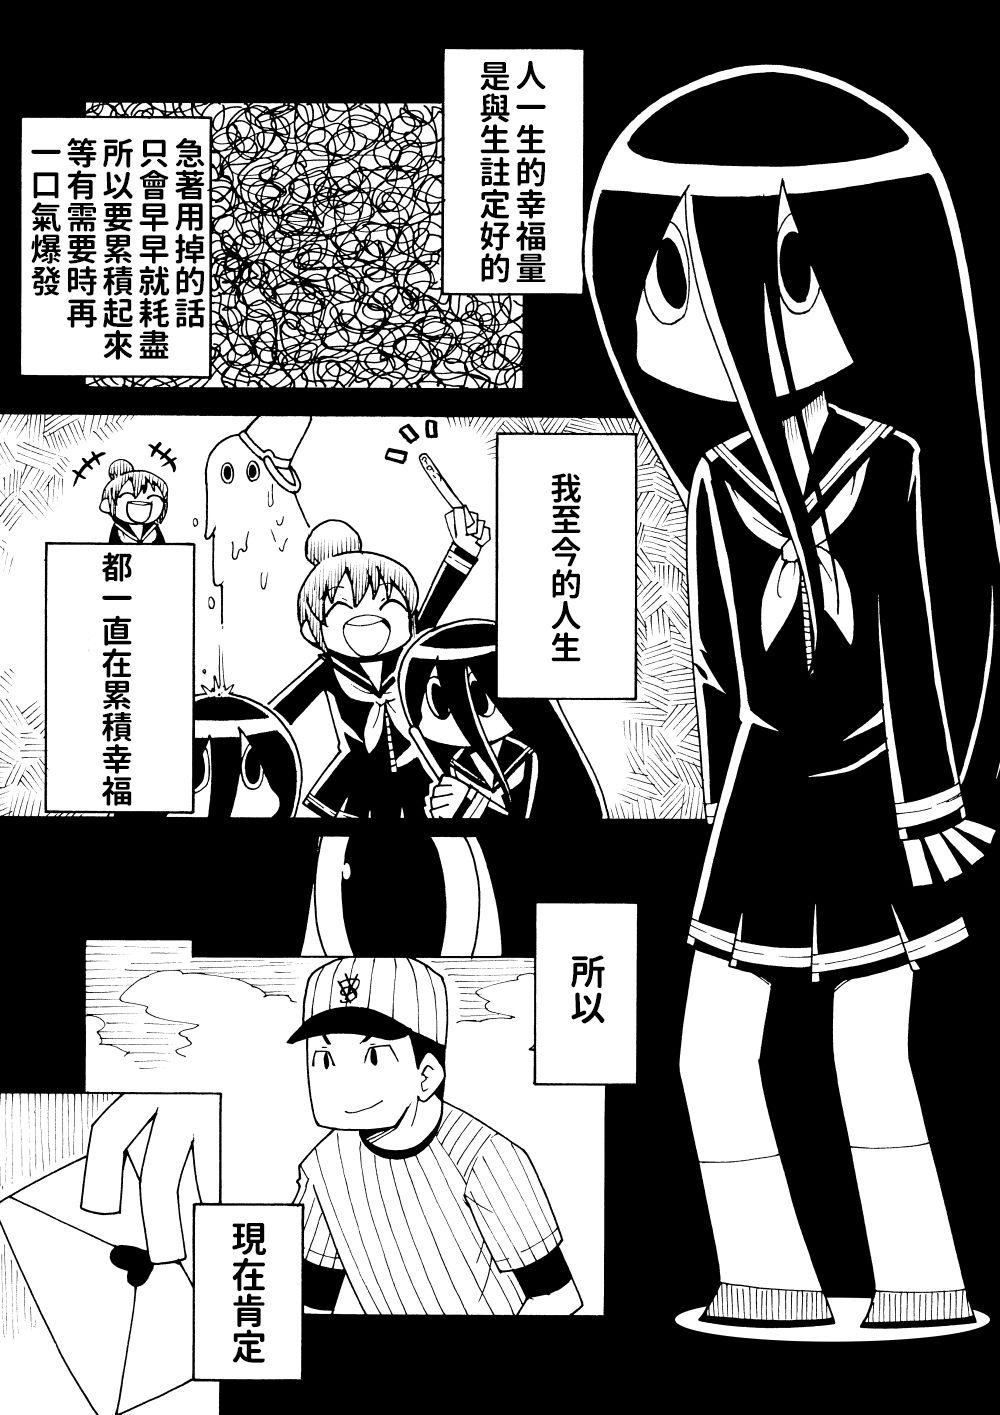 Shiawase Manga | 幸福漫畫 1